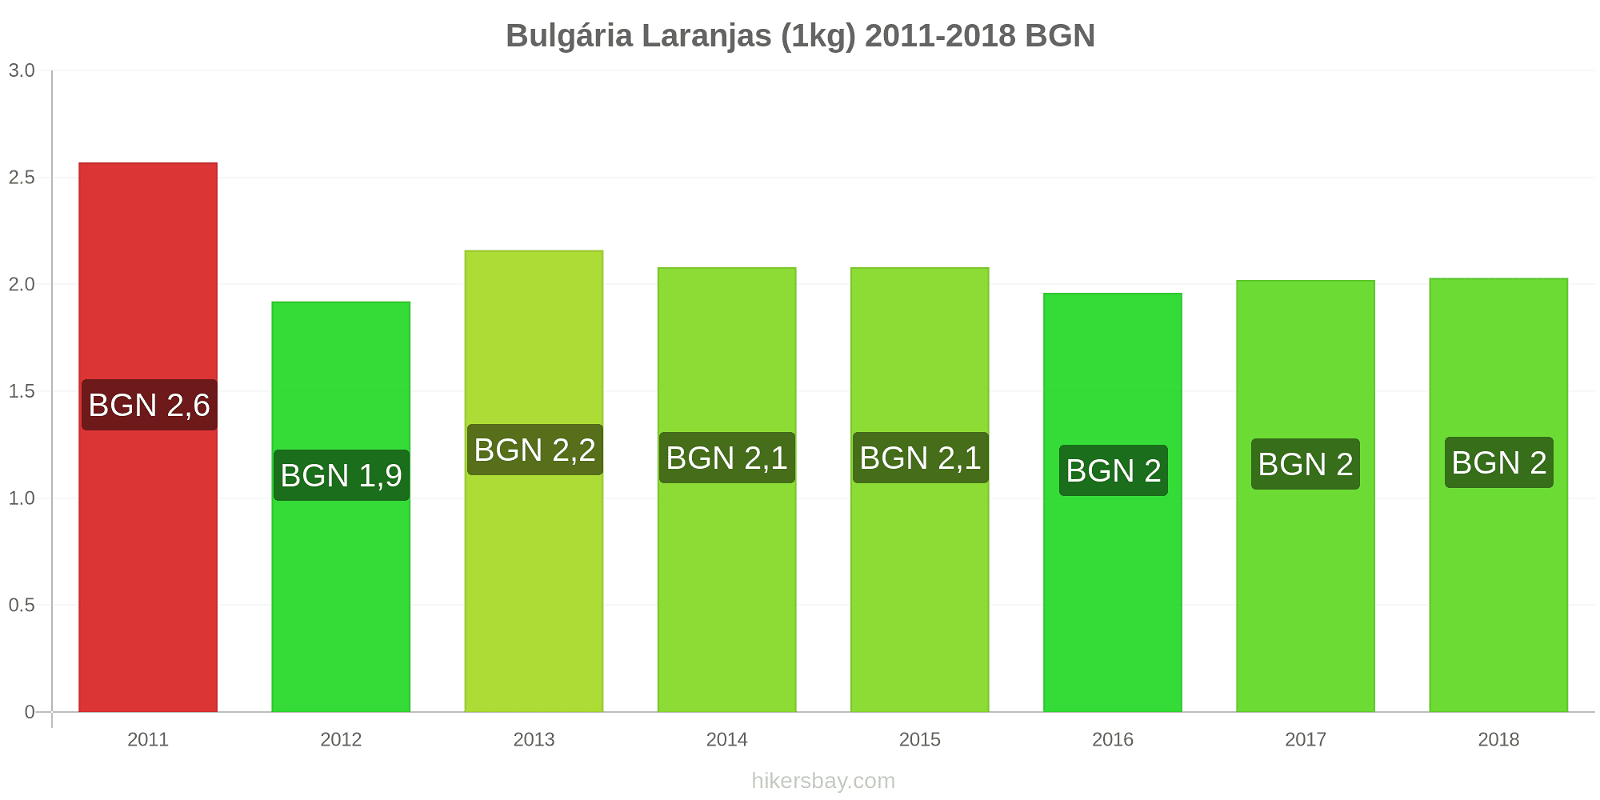 Bulgária mudanças de preços Laranjas (1kg) hikersbay.com